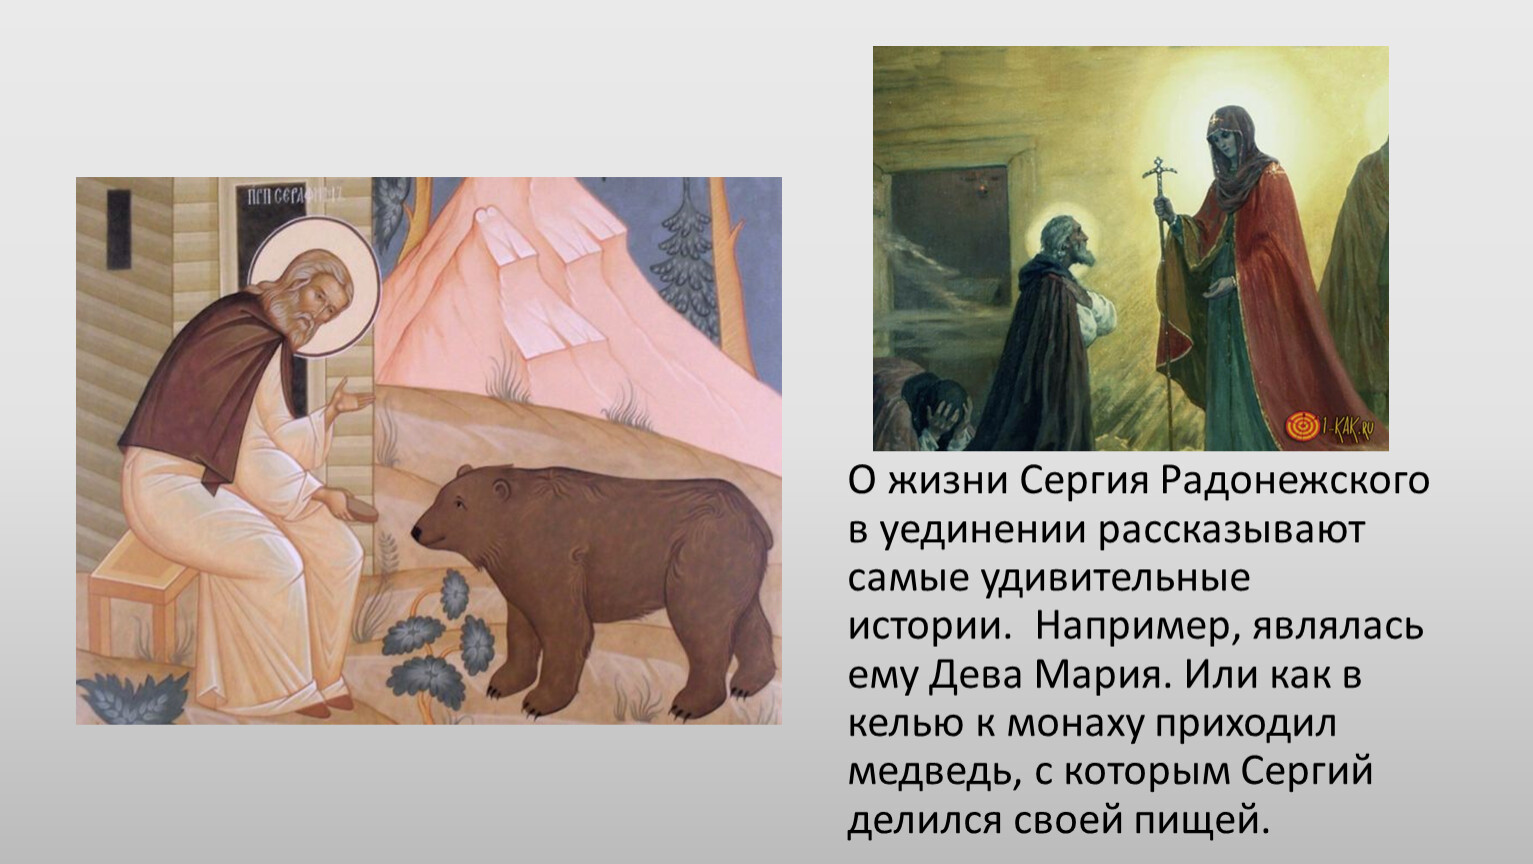 Сергий делится хлебом с медведем